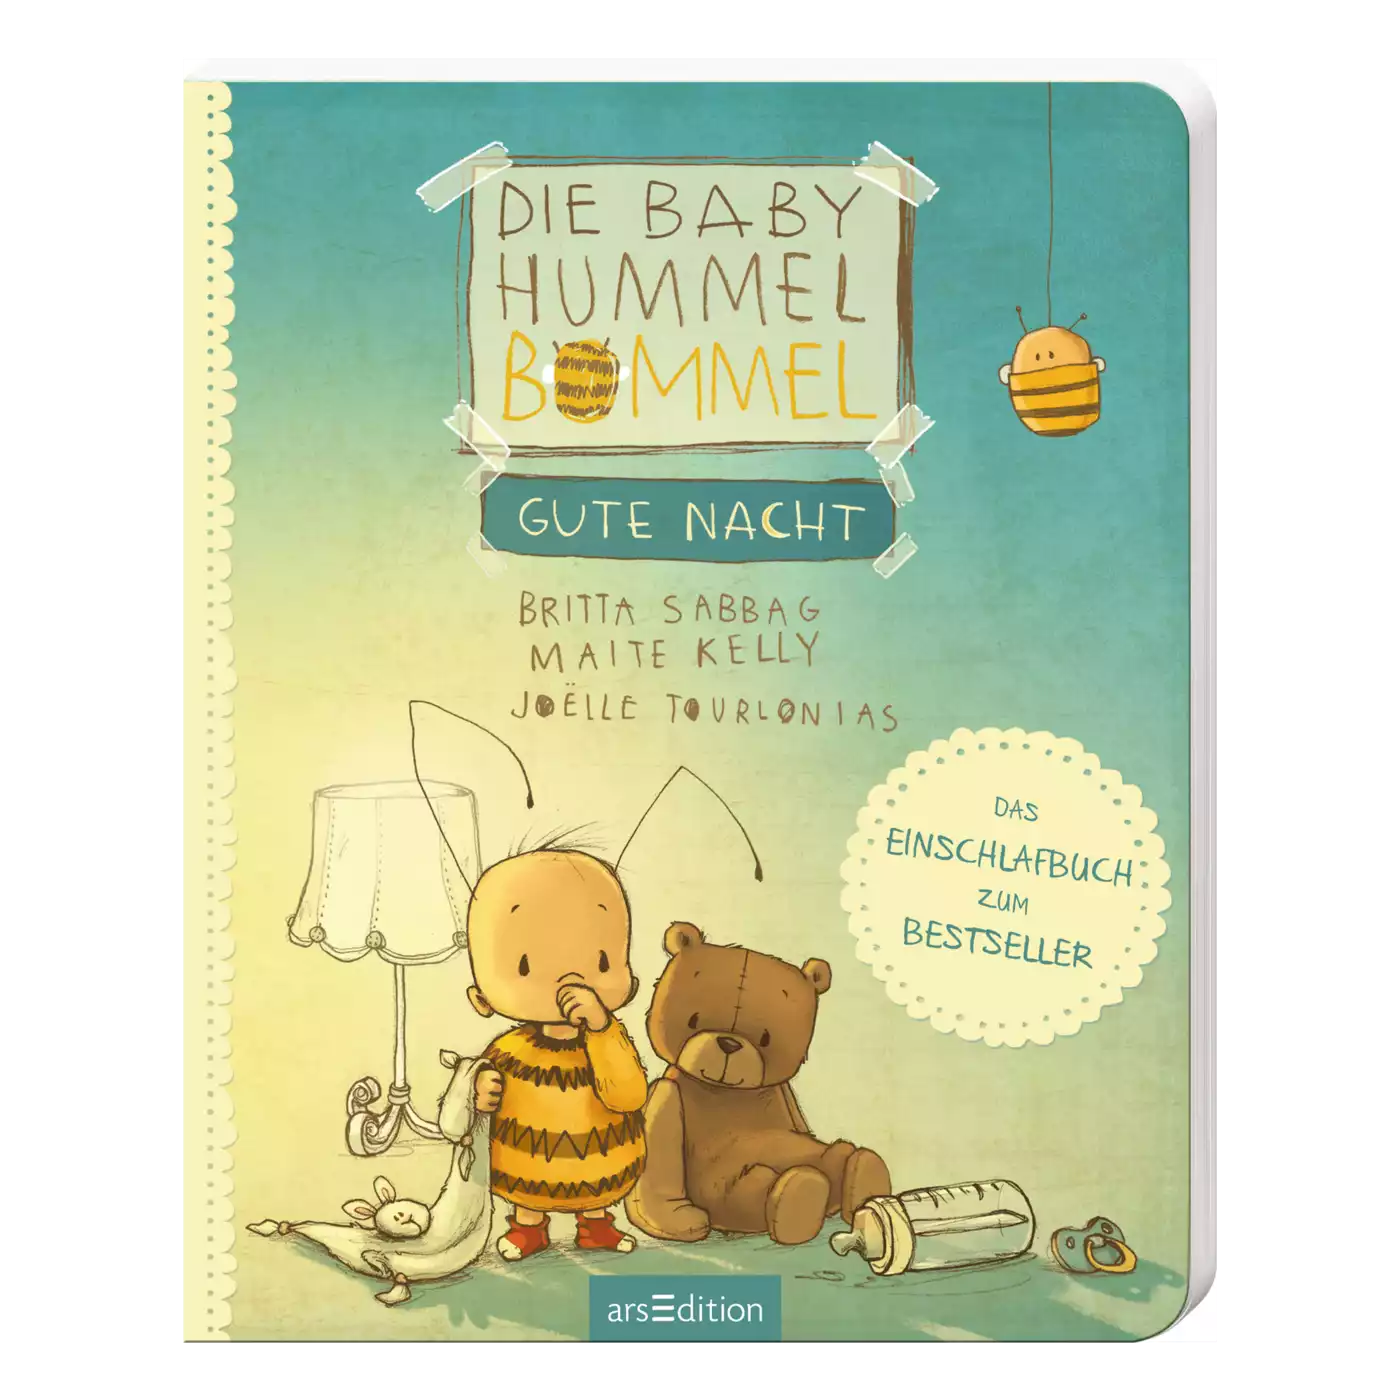 Die Baby Hummel Bommel - Gute Nacht arsEdition 2000574201702 1